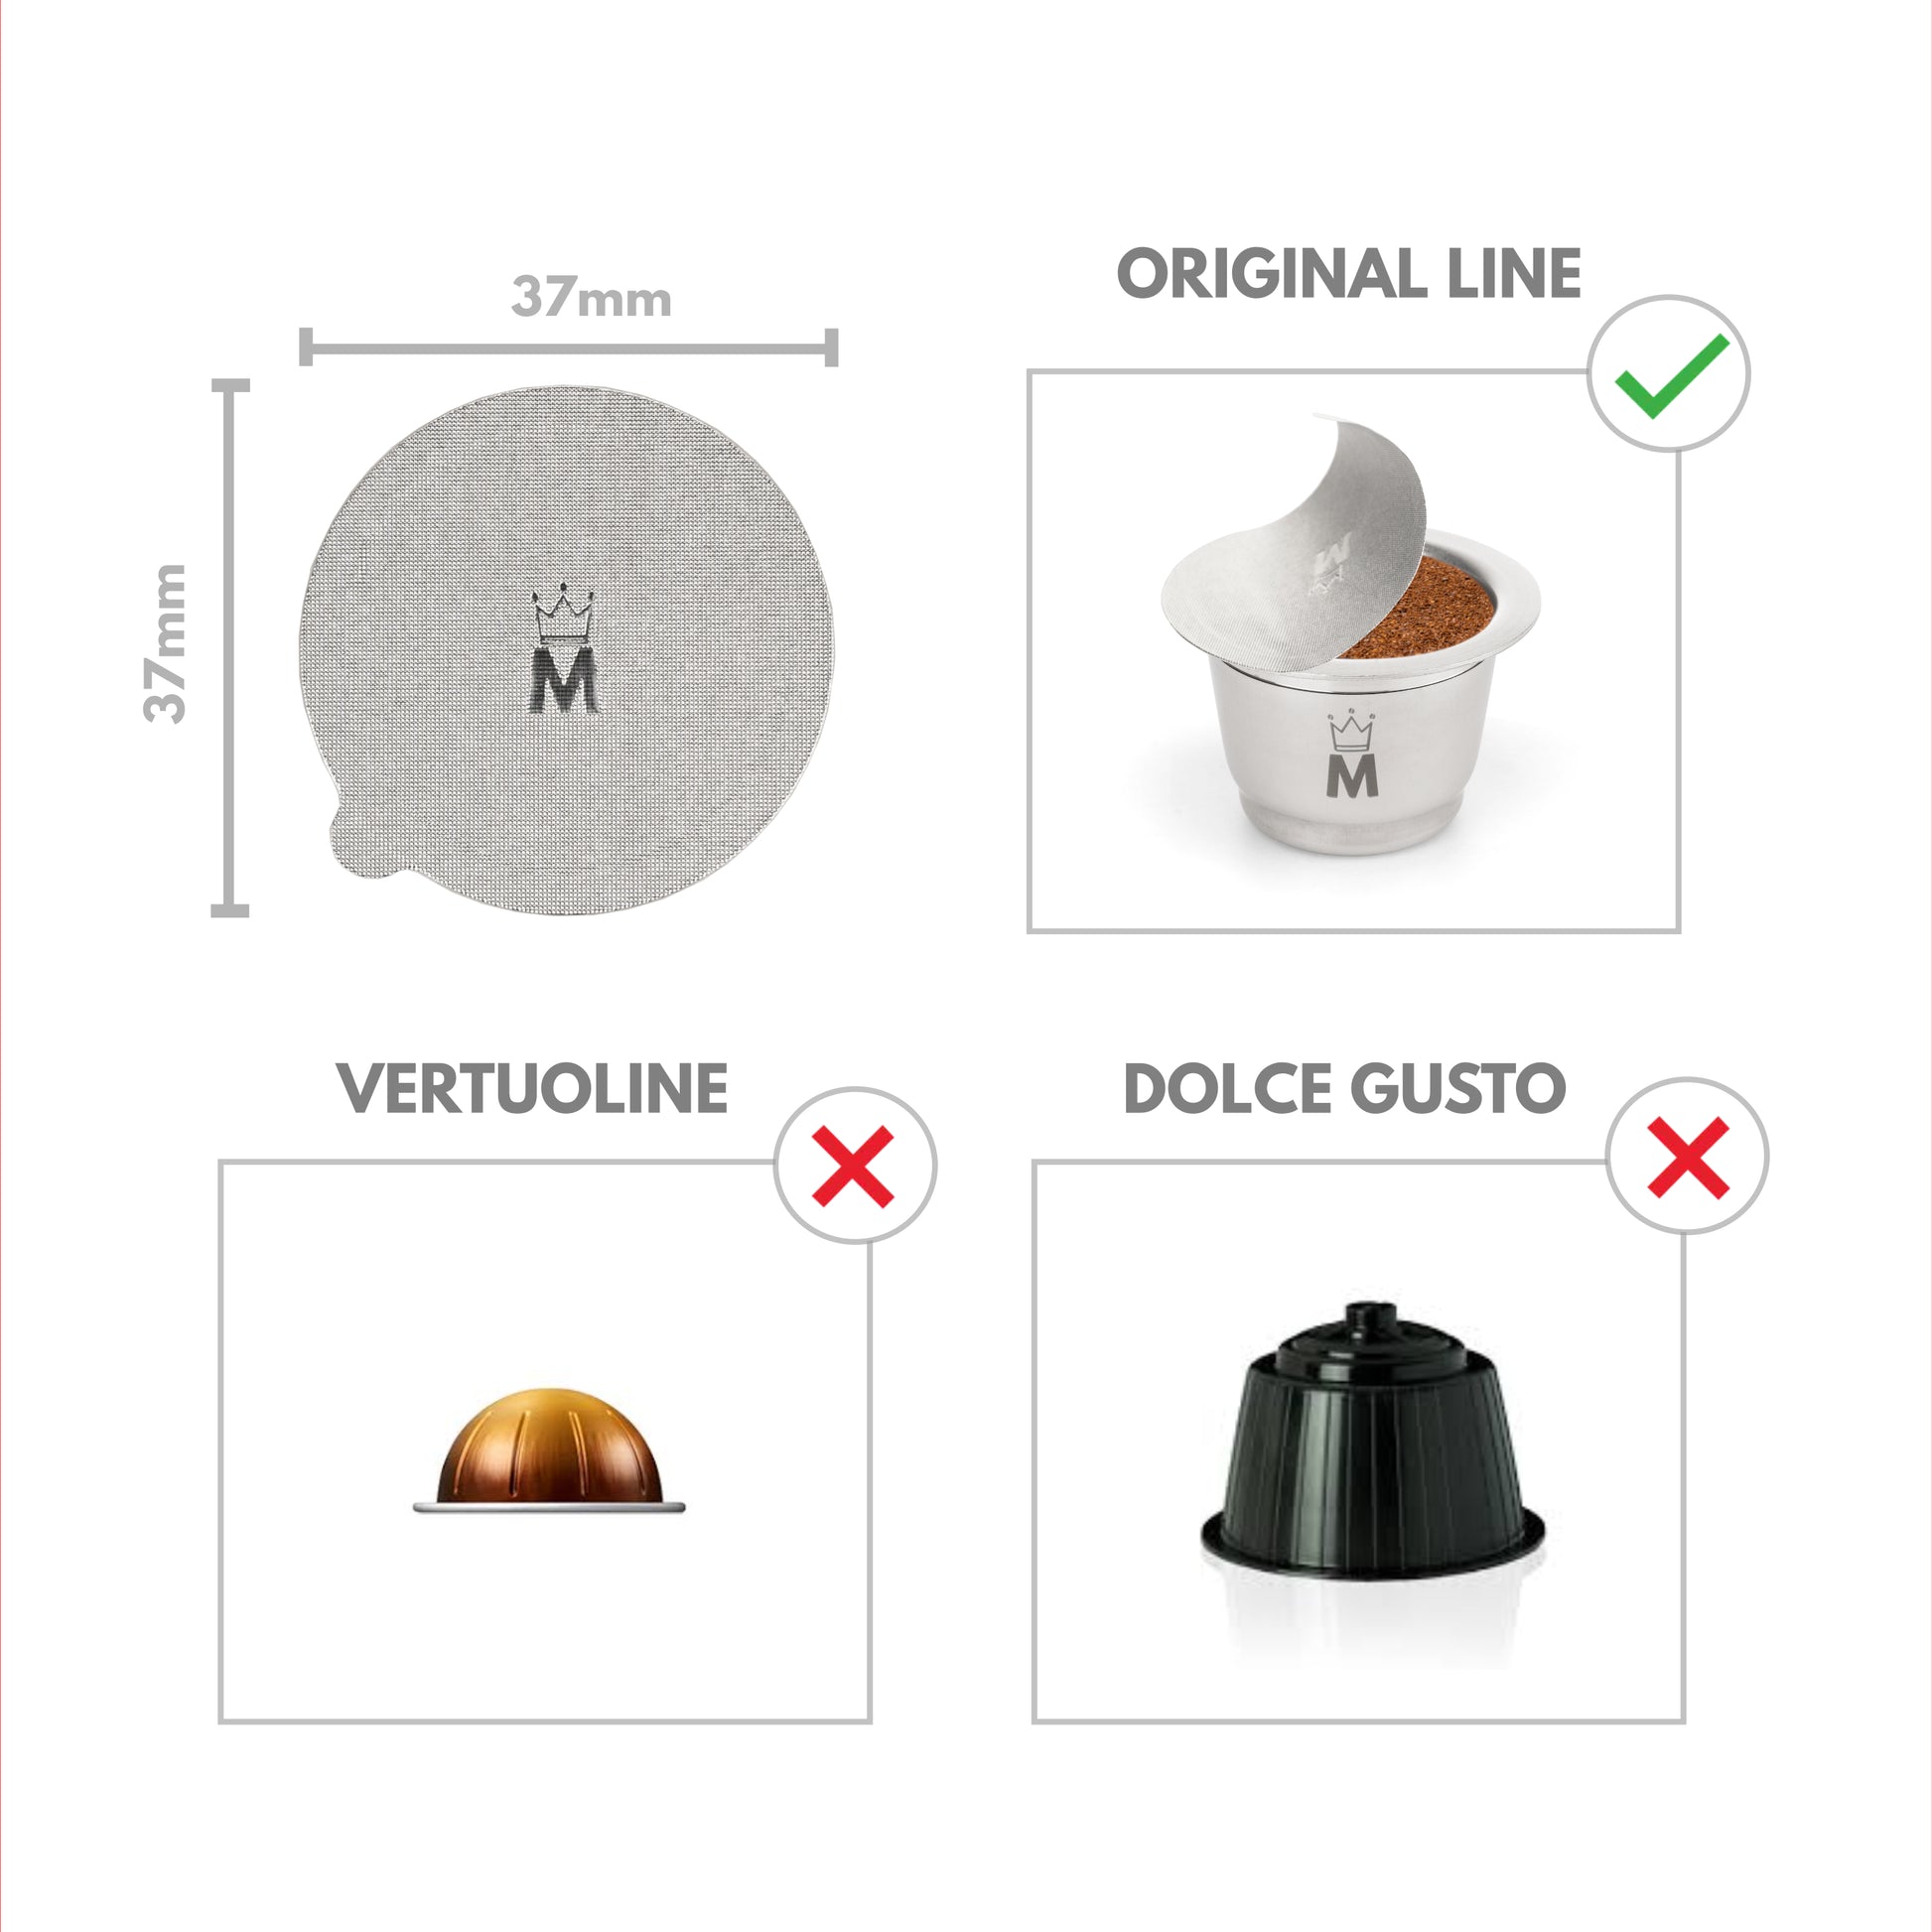 capsule nespresso vertuo compatibili - Capsule & Coffee